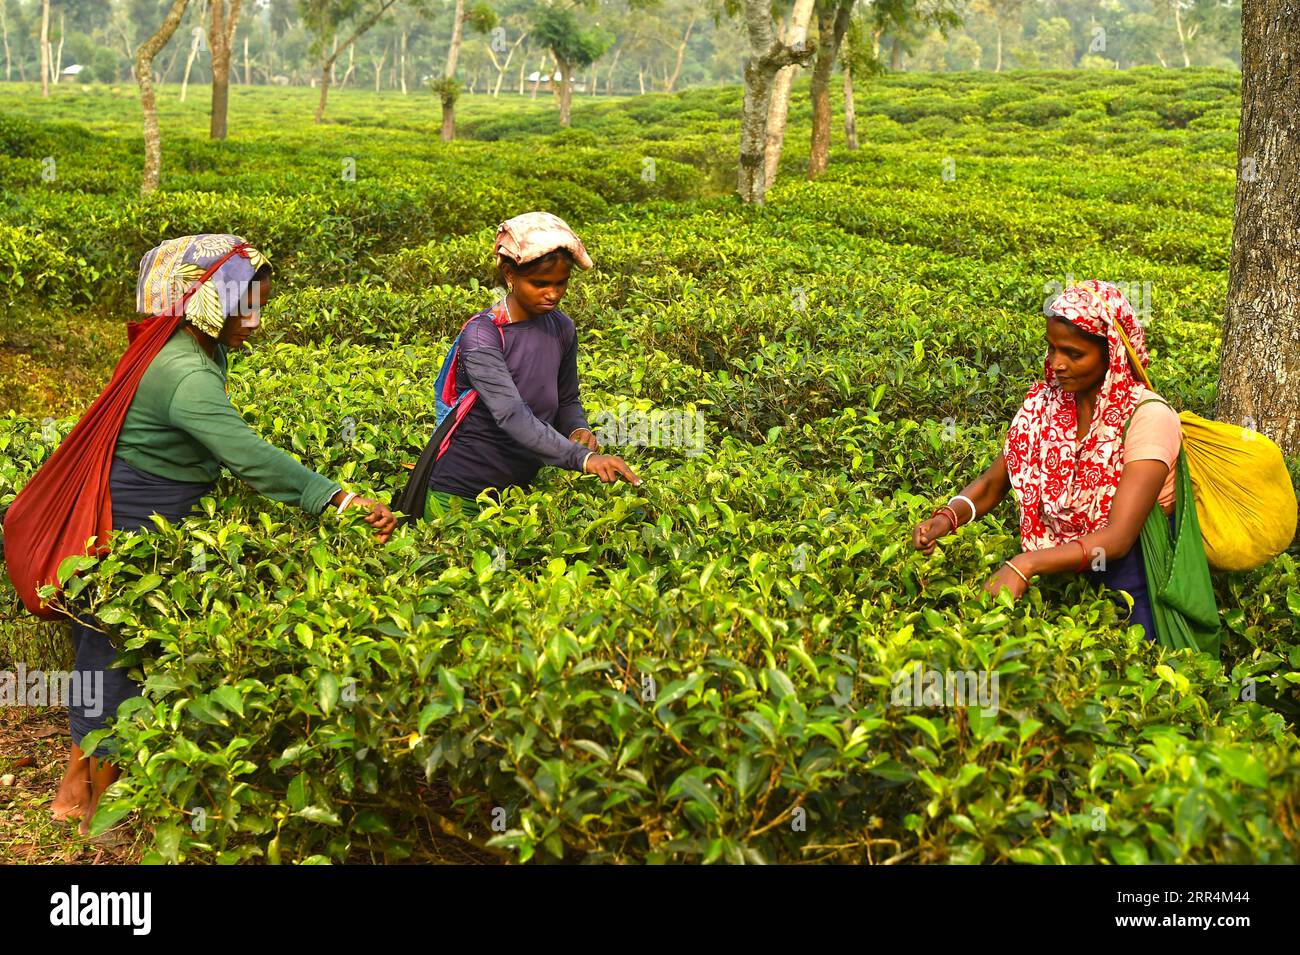 201208 -- SREEMANGAL, 8. Dezember 2020 -- Frauen pflücken Teeblätter in einem Garten in Sreemangal, Bangladesch, 7. Dezember 2020. BANGLADESCH-SREEMANGAL-TEE-PFLÜCKEN Salim PUBLICATIONxNOTxINxCHN Stockfoto